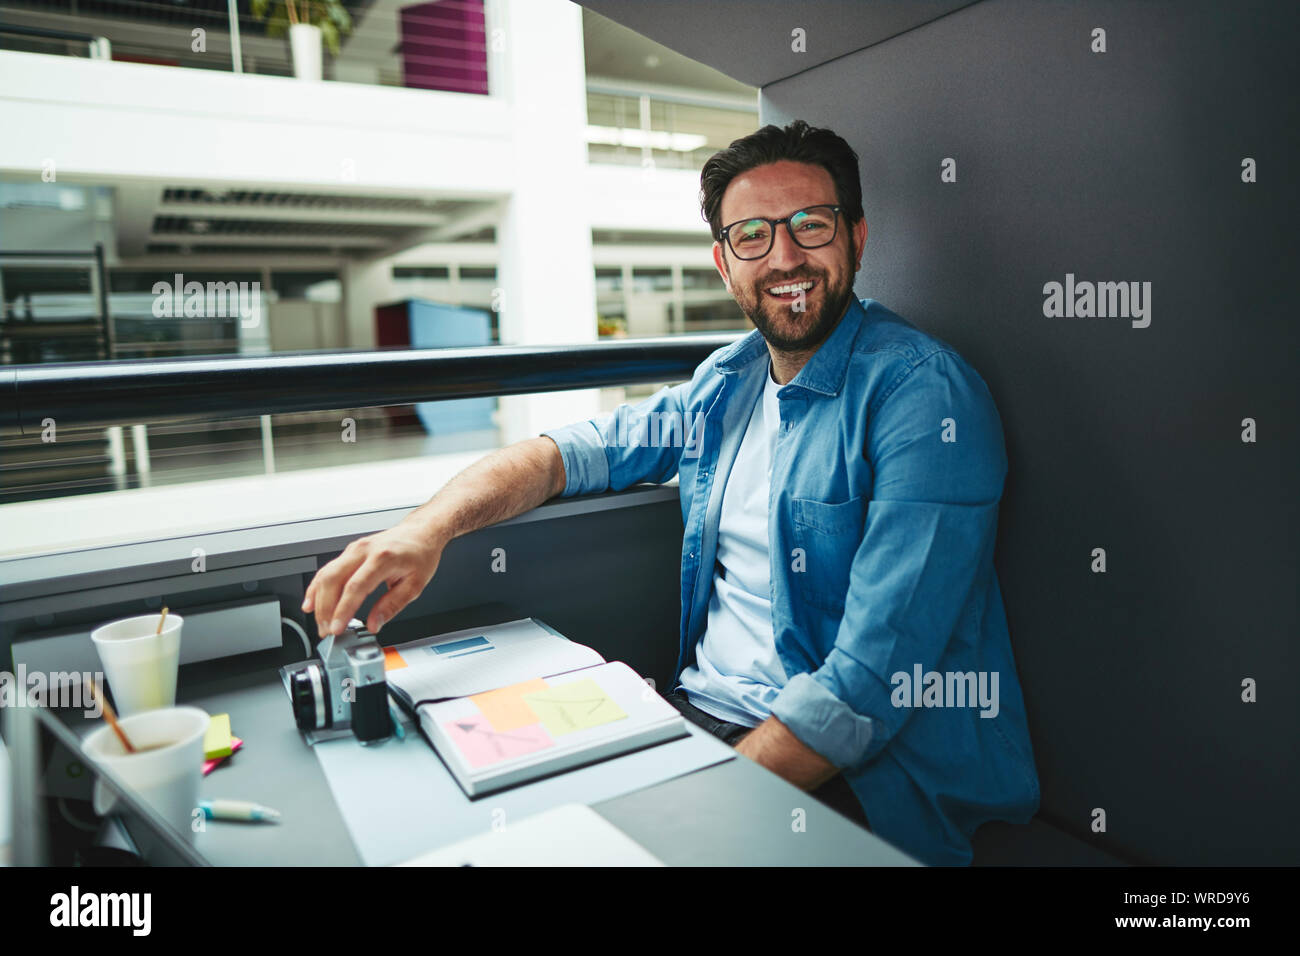 Lachend Creative Professional über Noten und arbeitet an einem Laptop, während allein in einem Büro pod Stockfoto